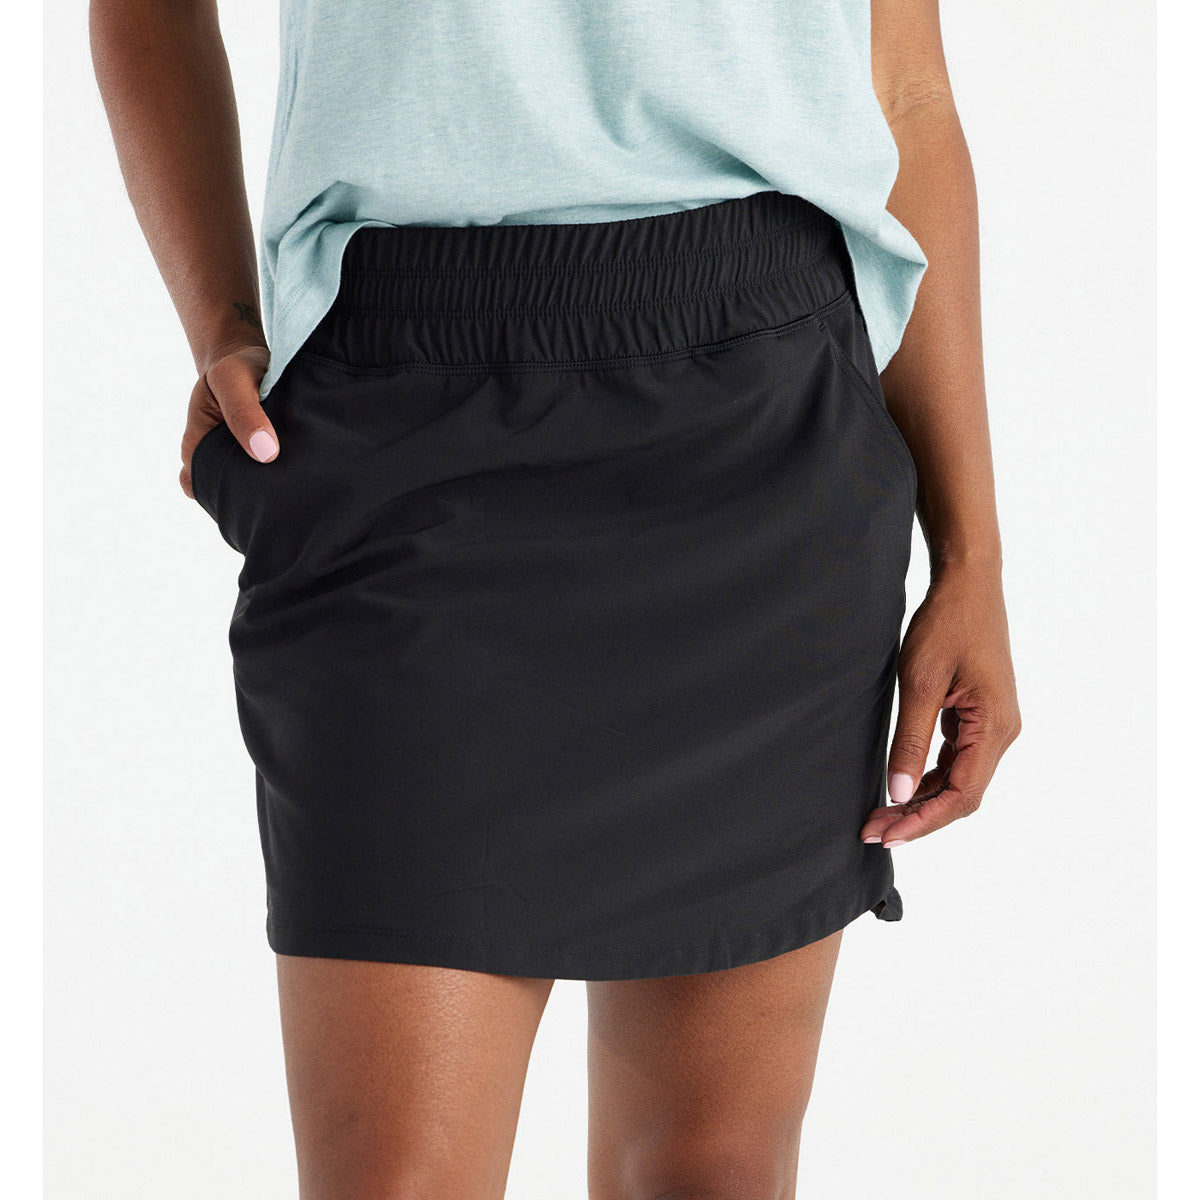 Women's Pull-On Breeze Skirt